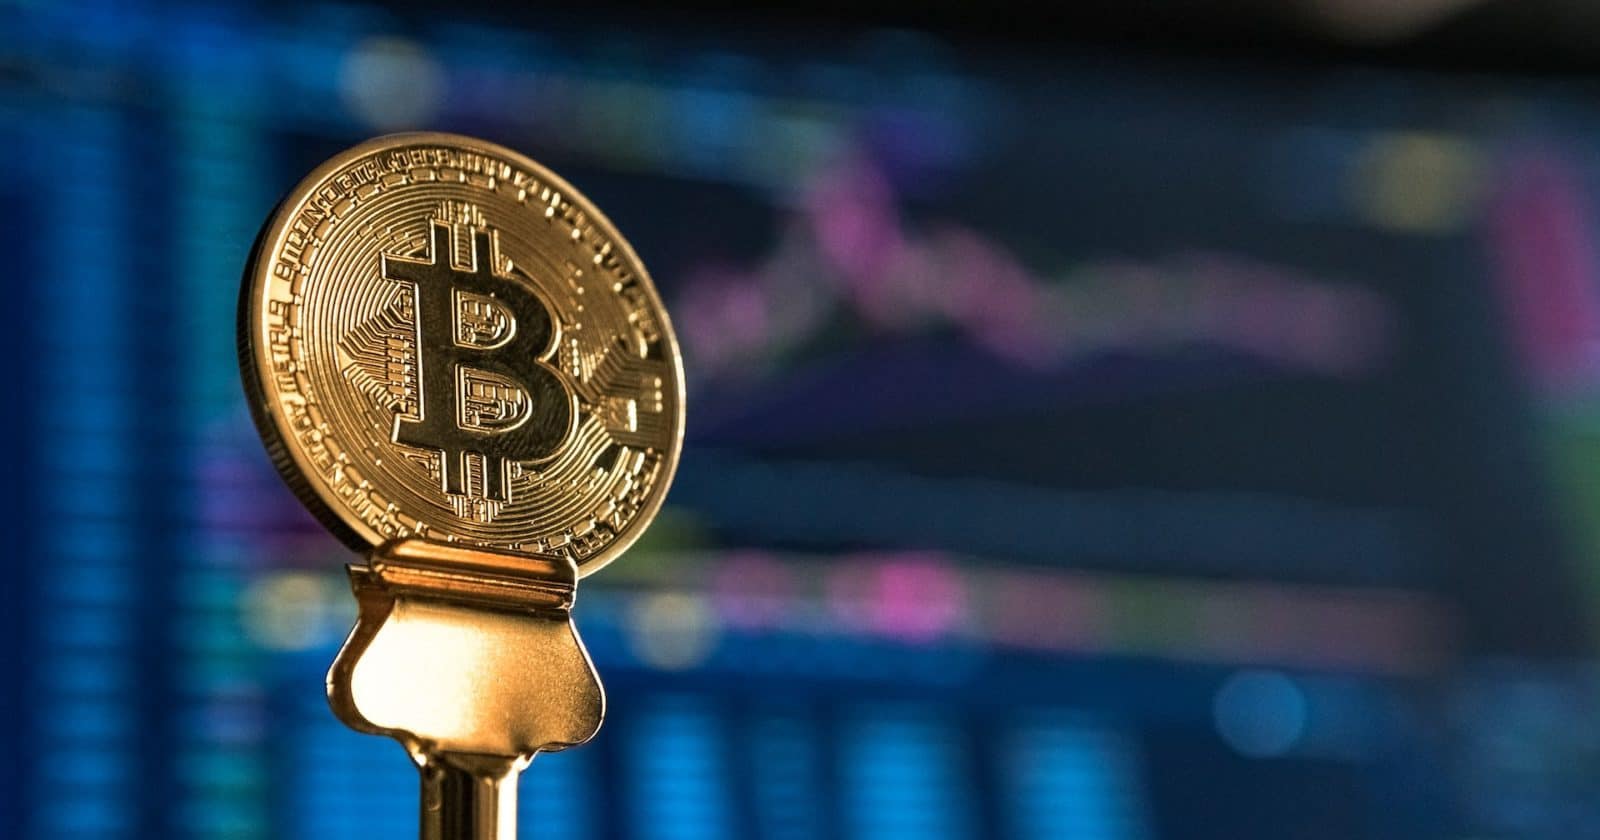 Bitcoin's 50% Price Surge Lacks Previous Bull Markets- Report